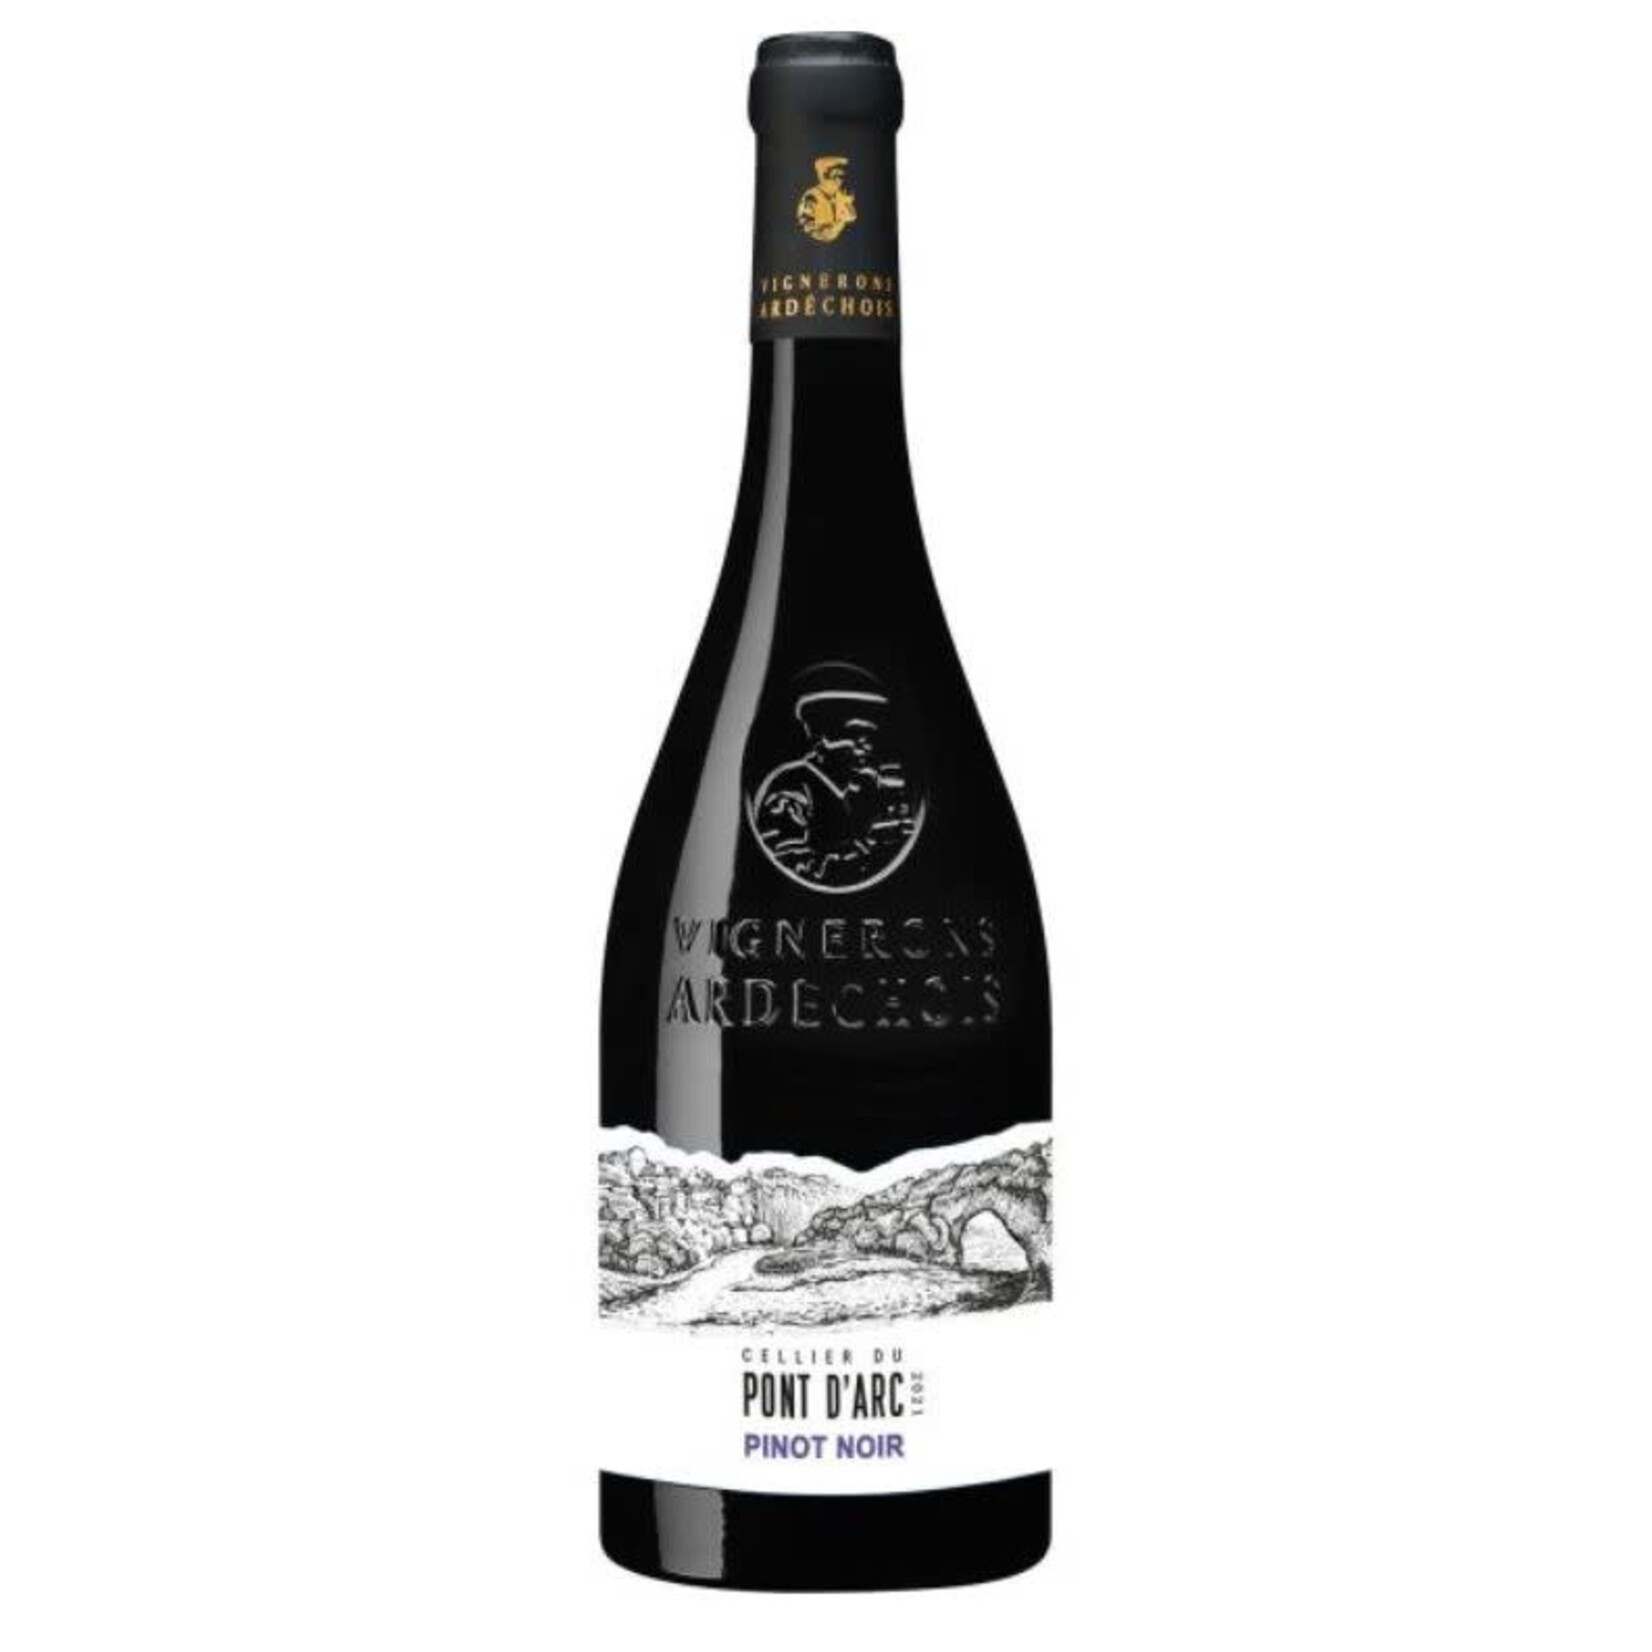 Vignorons Ardechois Cellier du Pont d Arc Pinot Noir 2021,  Ardeche  France